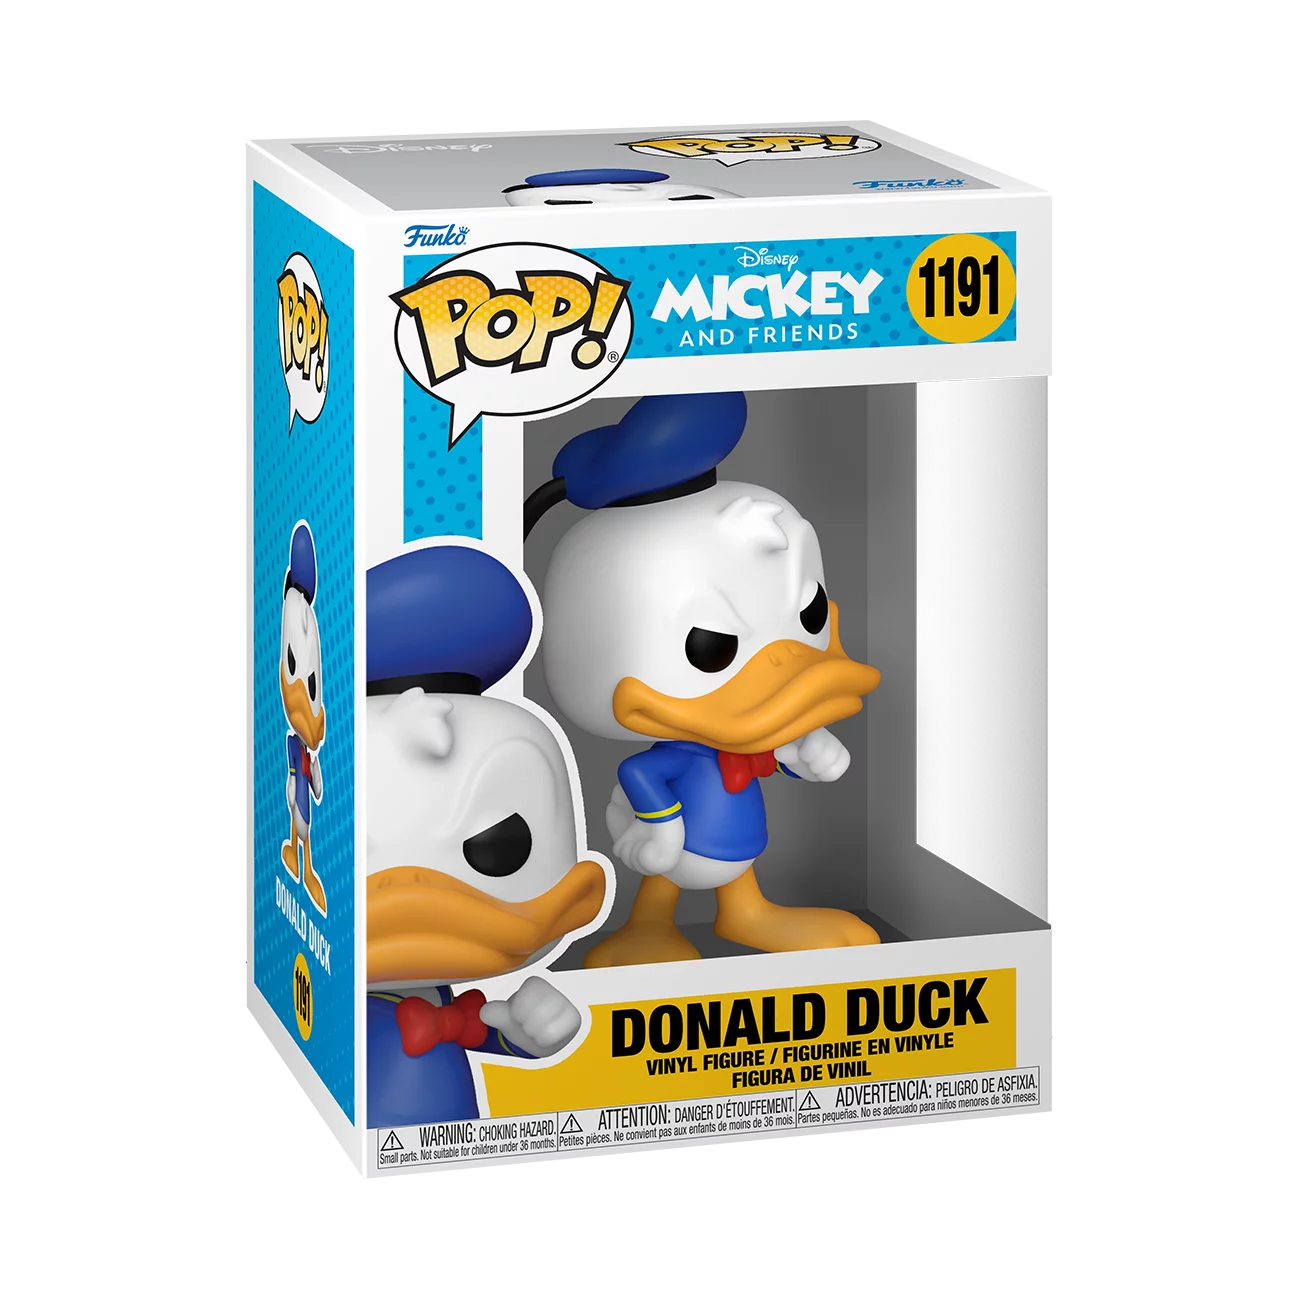 Disney Classics Donald Duck Pop! Vinyl Figure